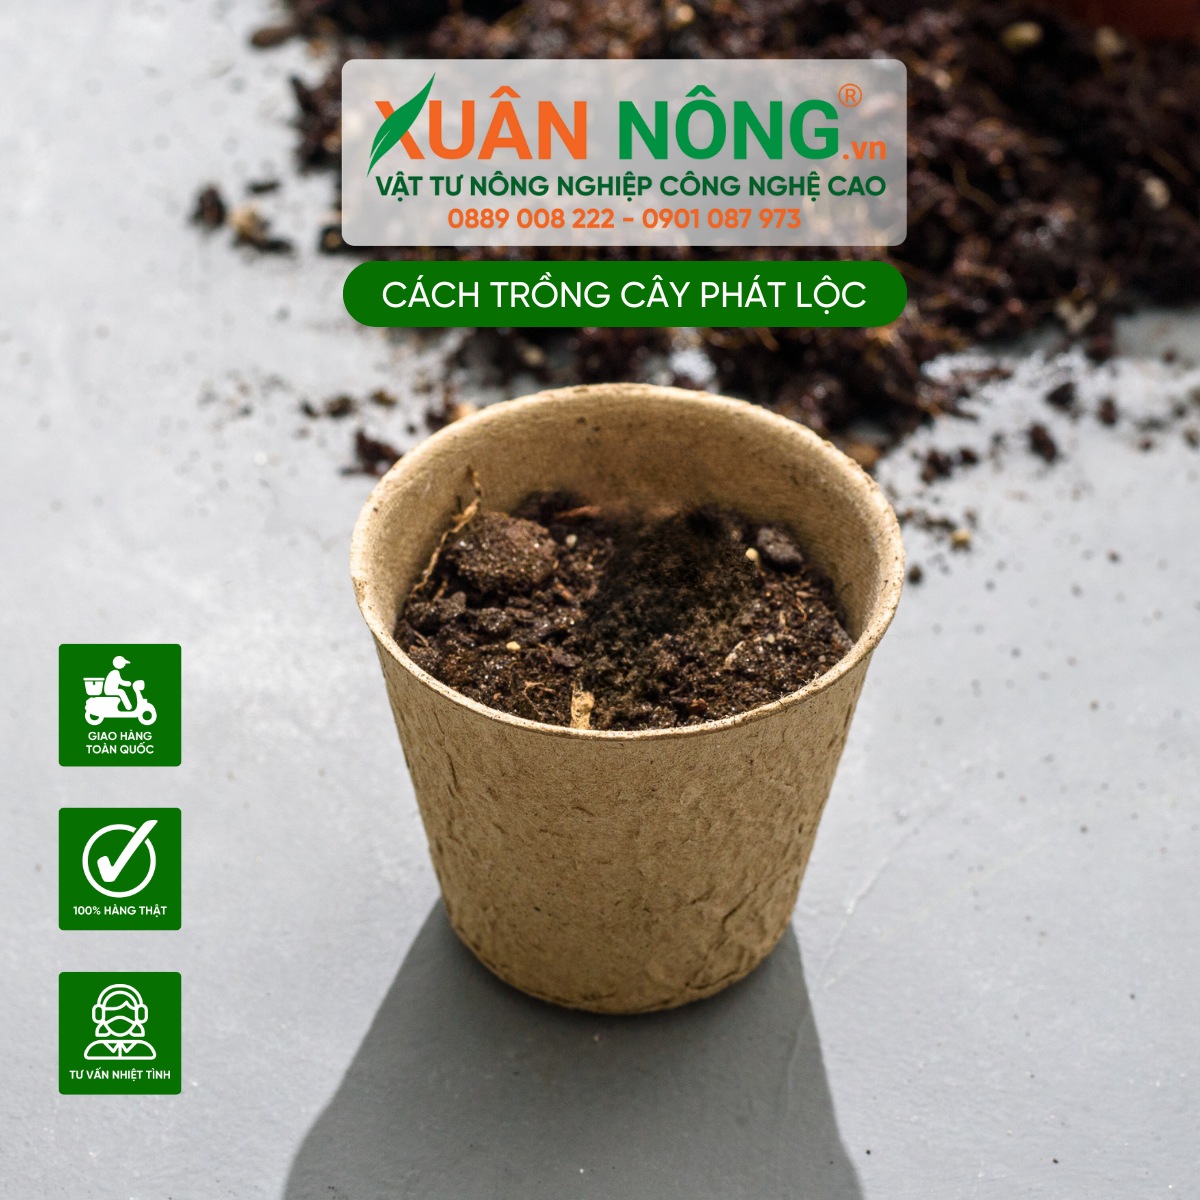 Chuẩn bị đất trồng cây Phát Lộc